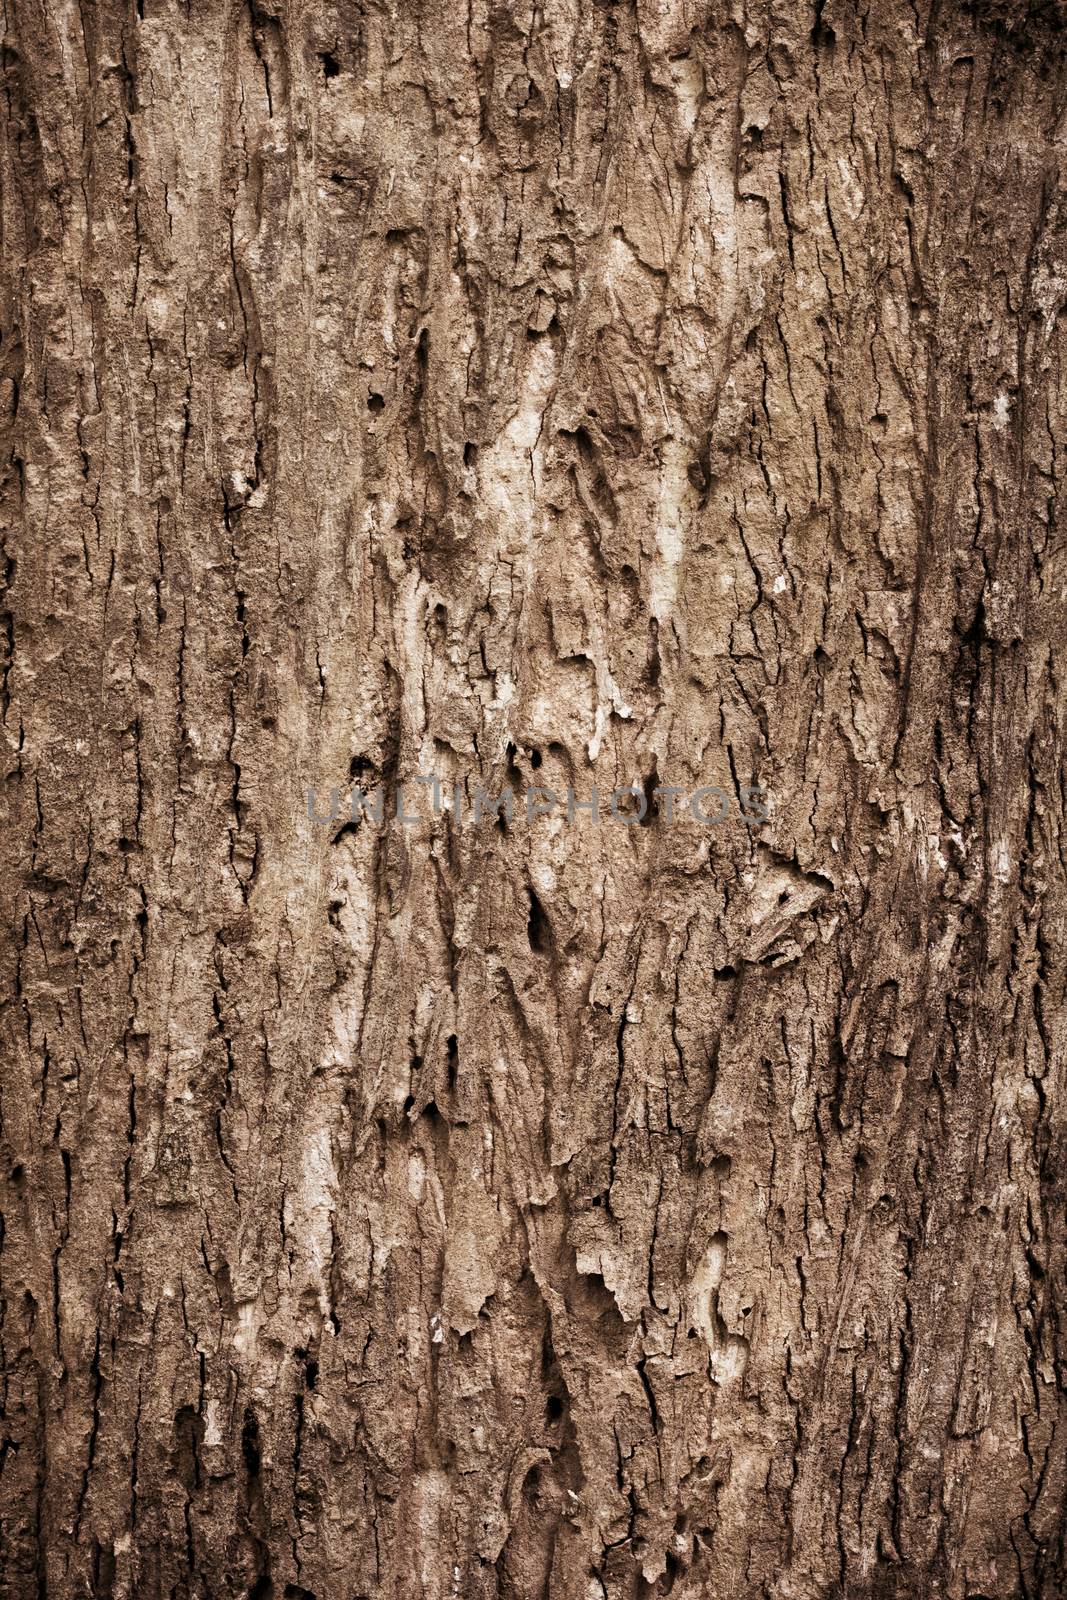 Tree bark texture by happystock